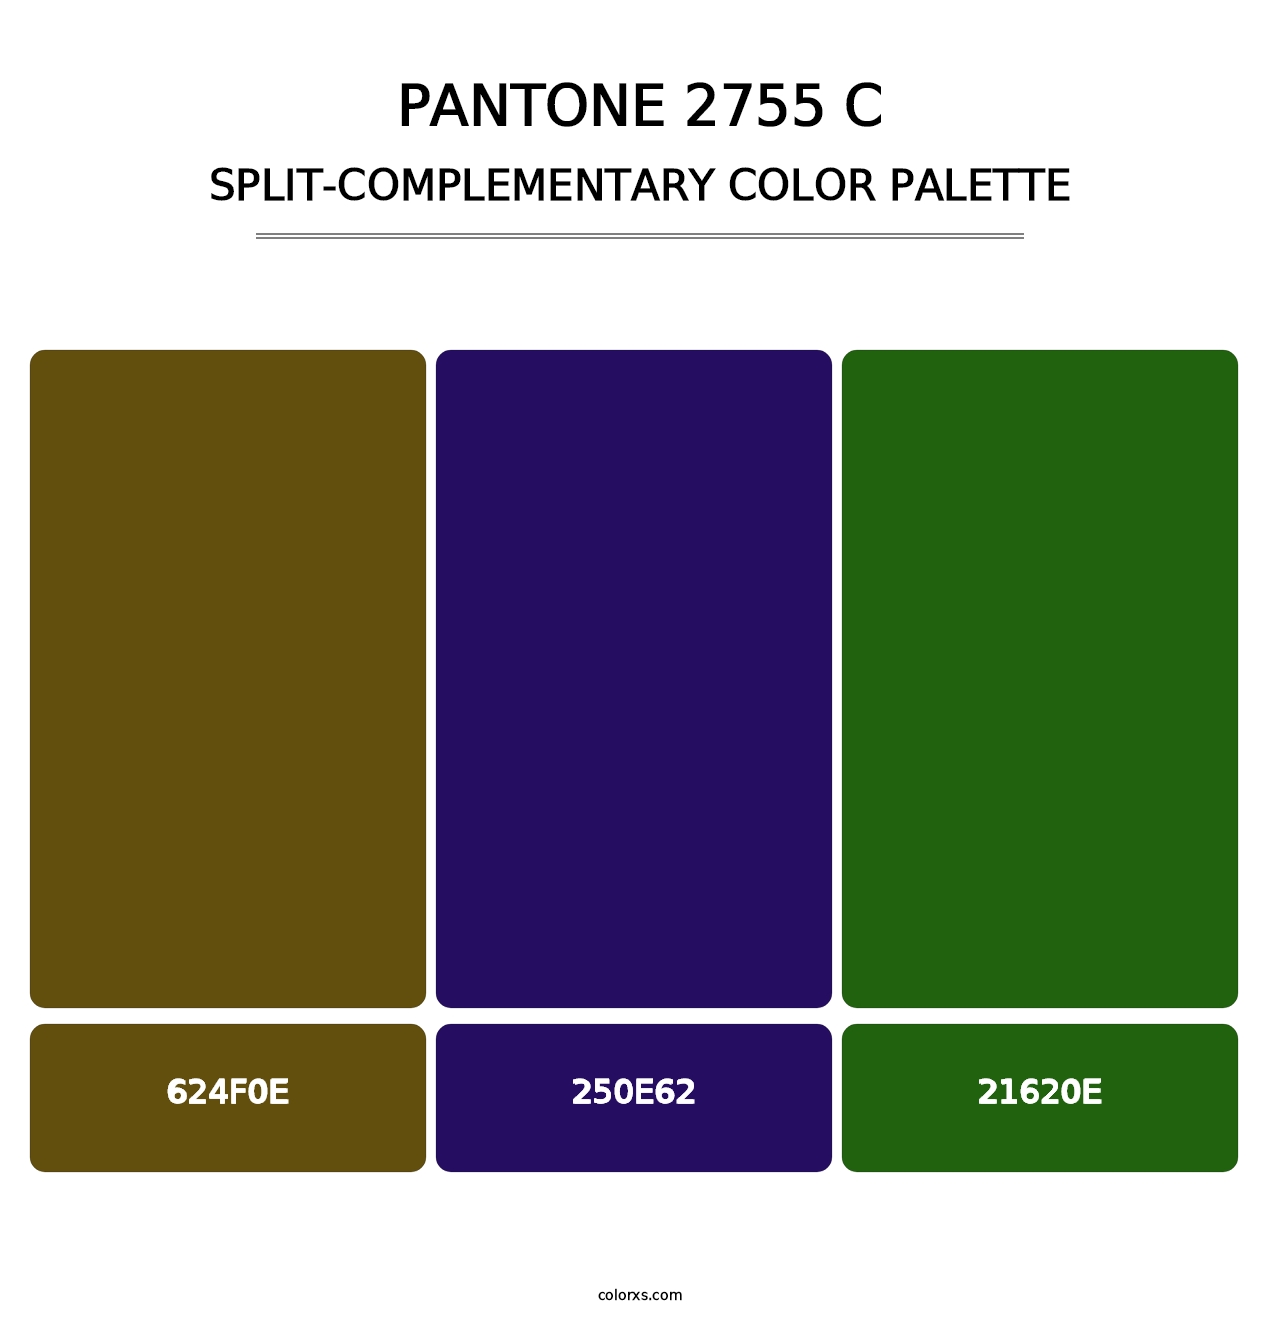 PANTONE 2755 C - Split-Complementary Color Palette